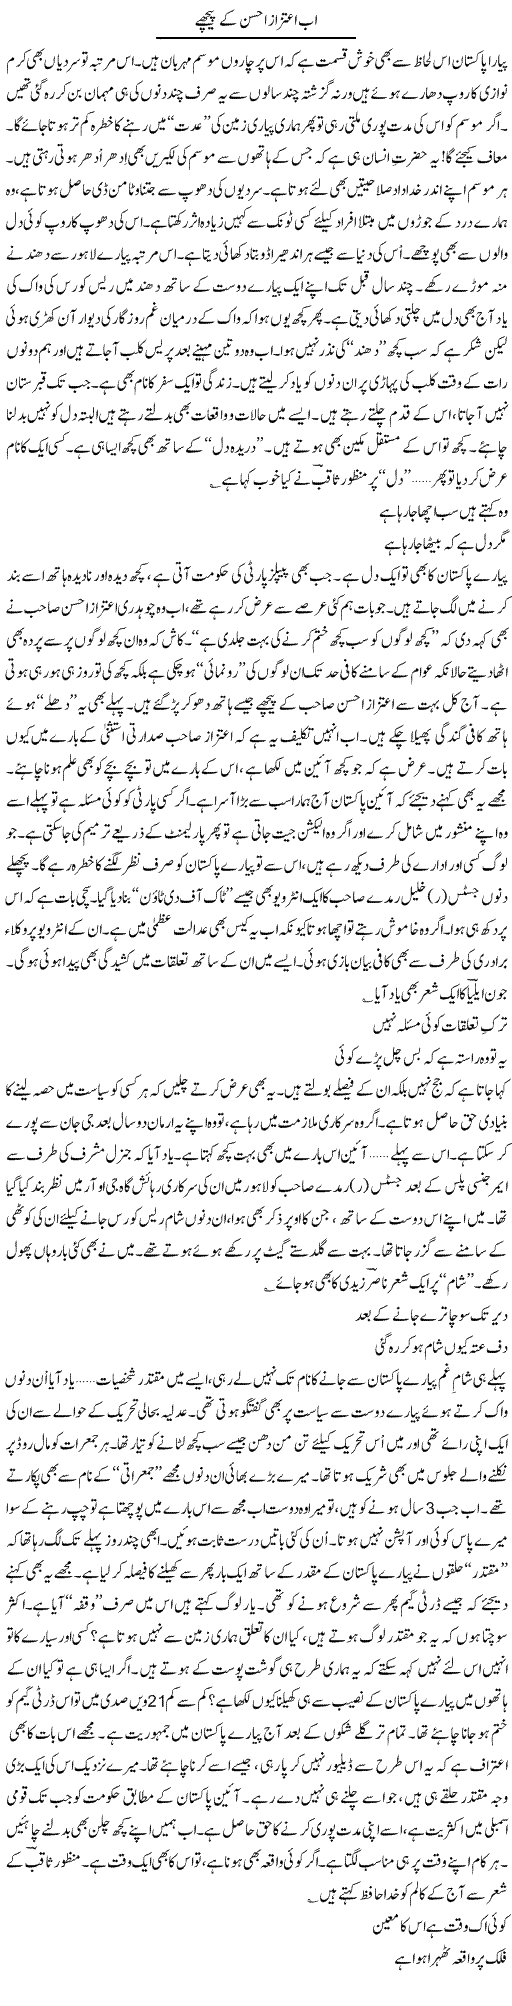 Aitzaz Ahsan Express Column Ijaz Khan 2 February 2012